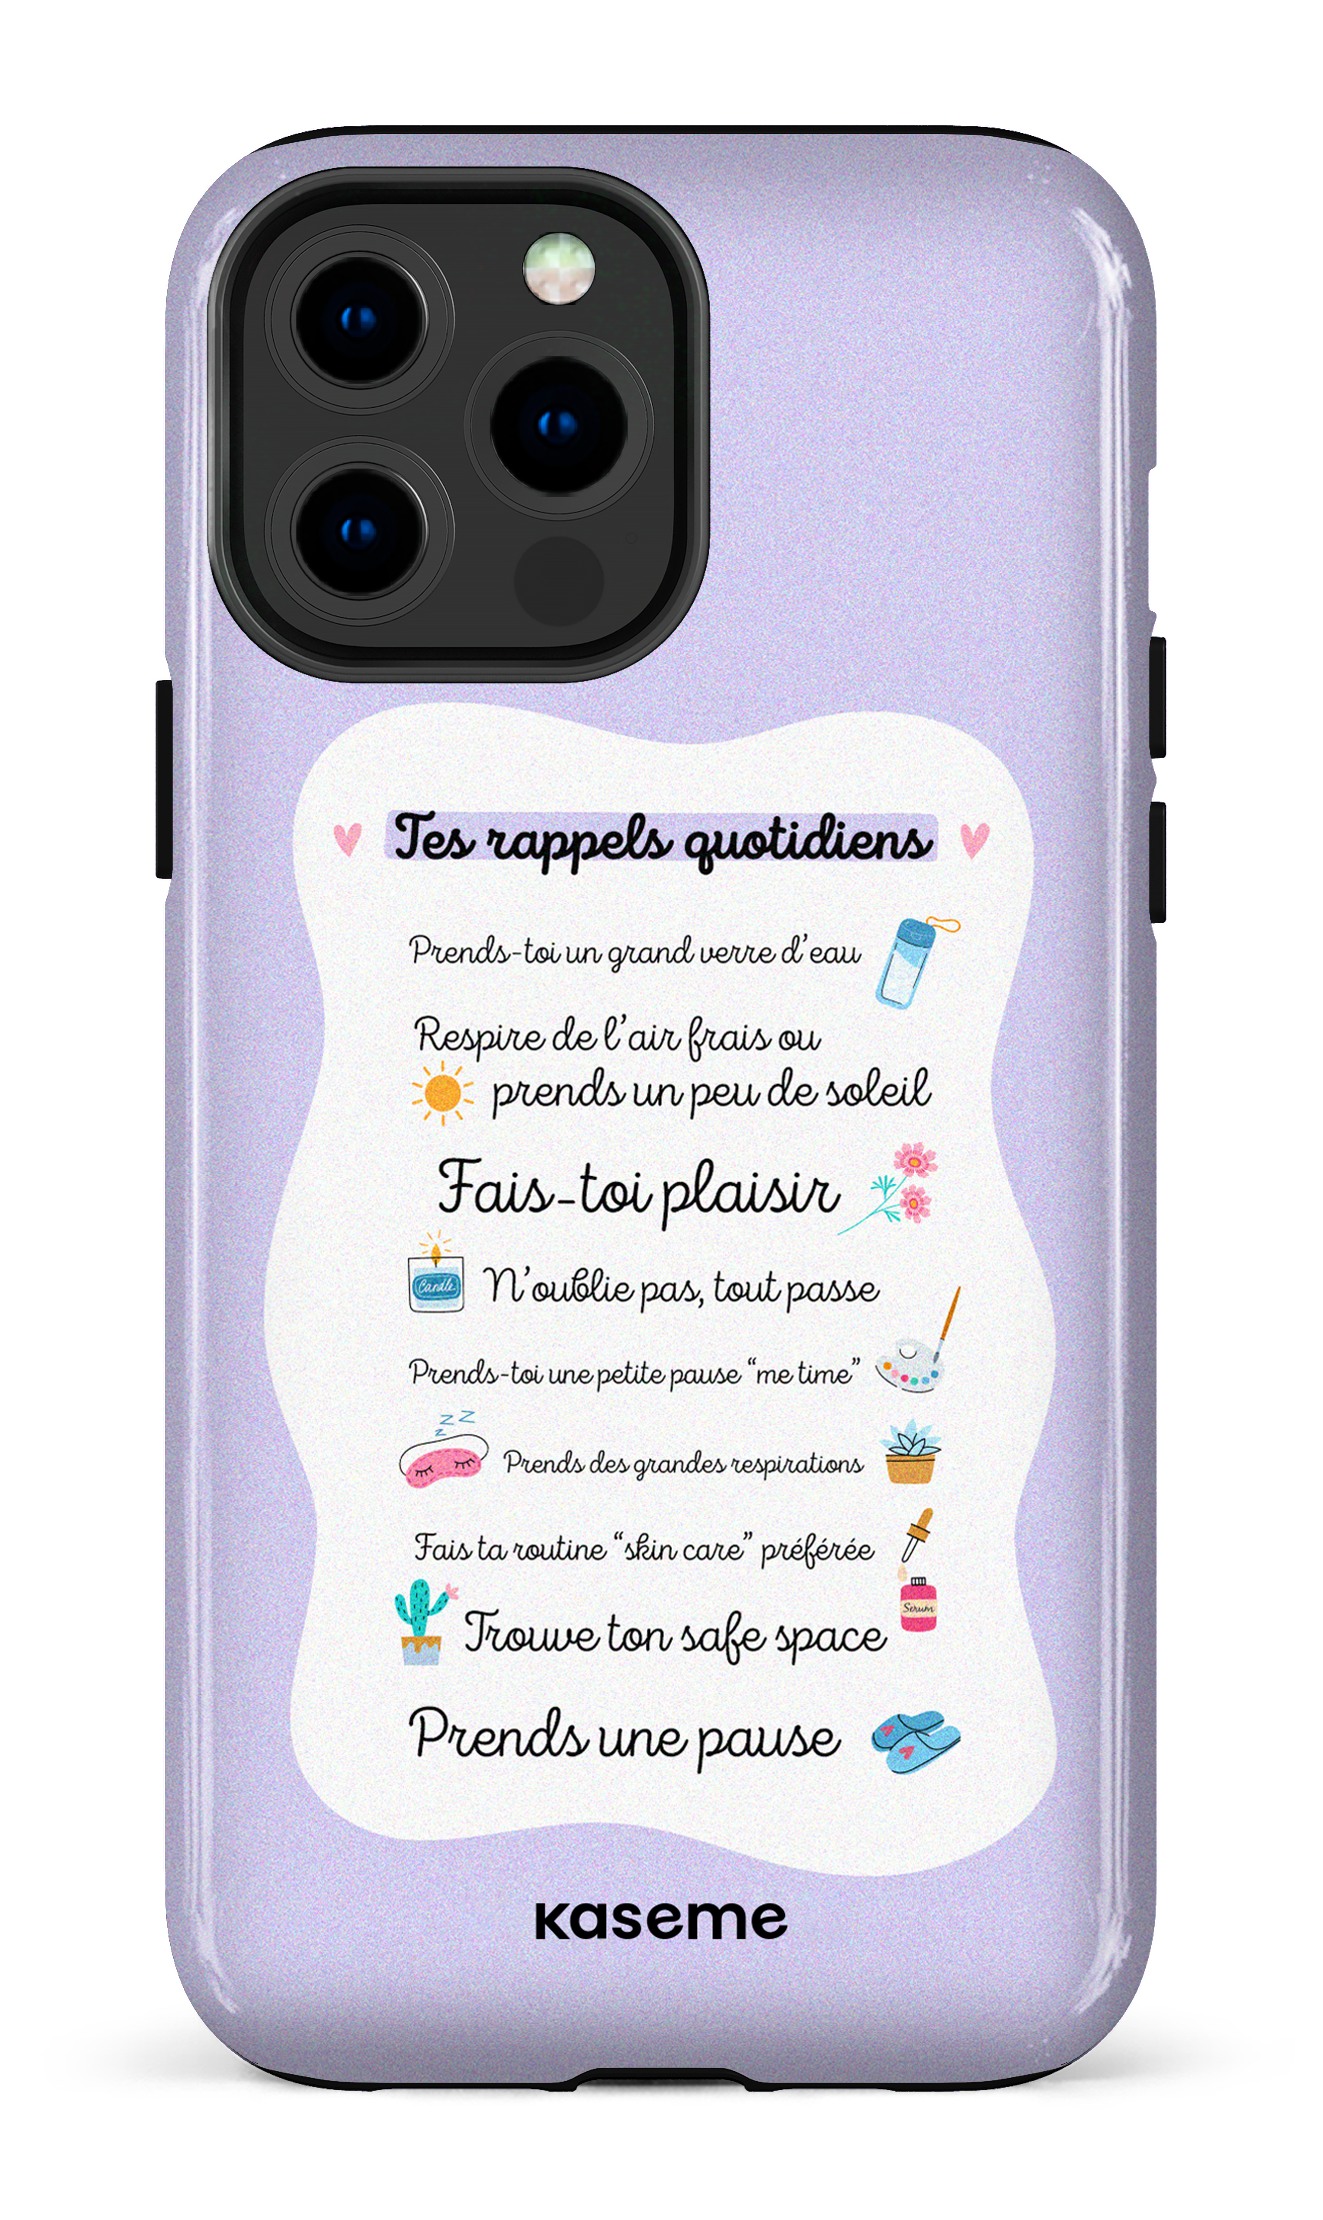 Tes rappels quotidiens purple - iPhone 13 Pro Max